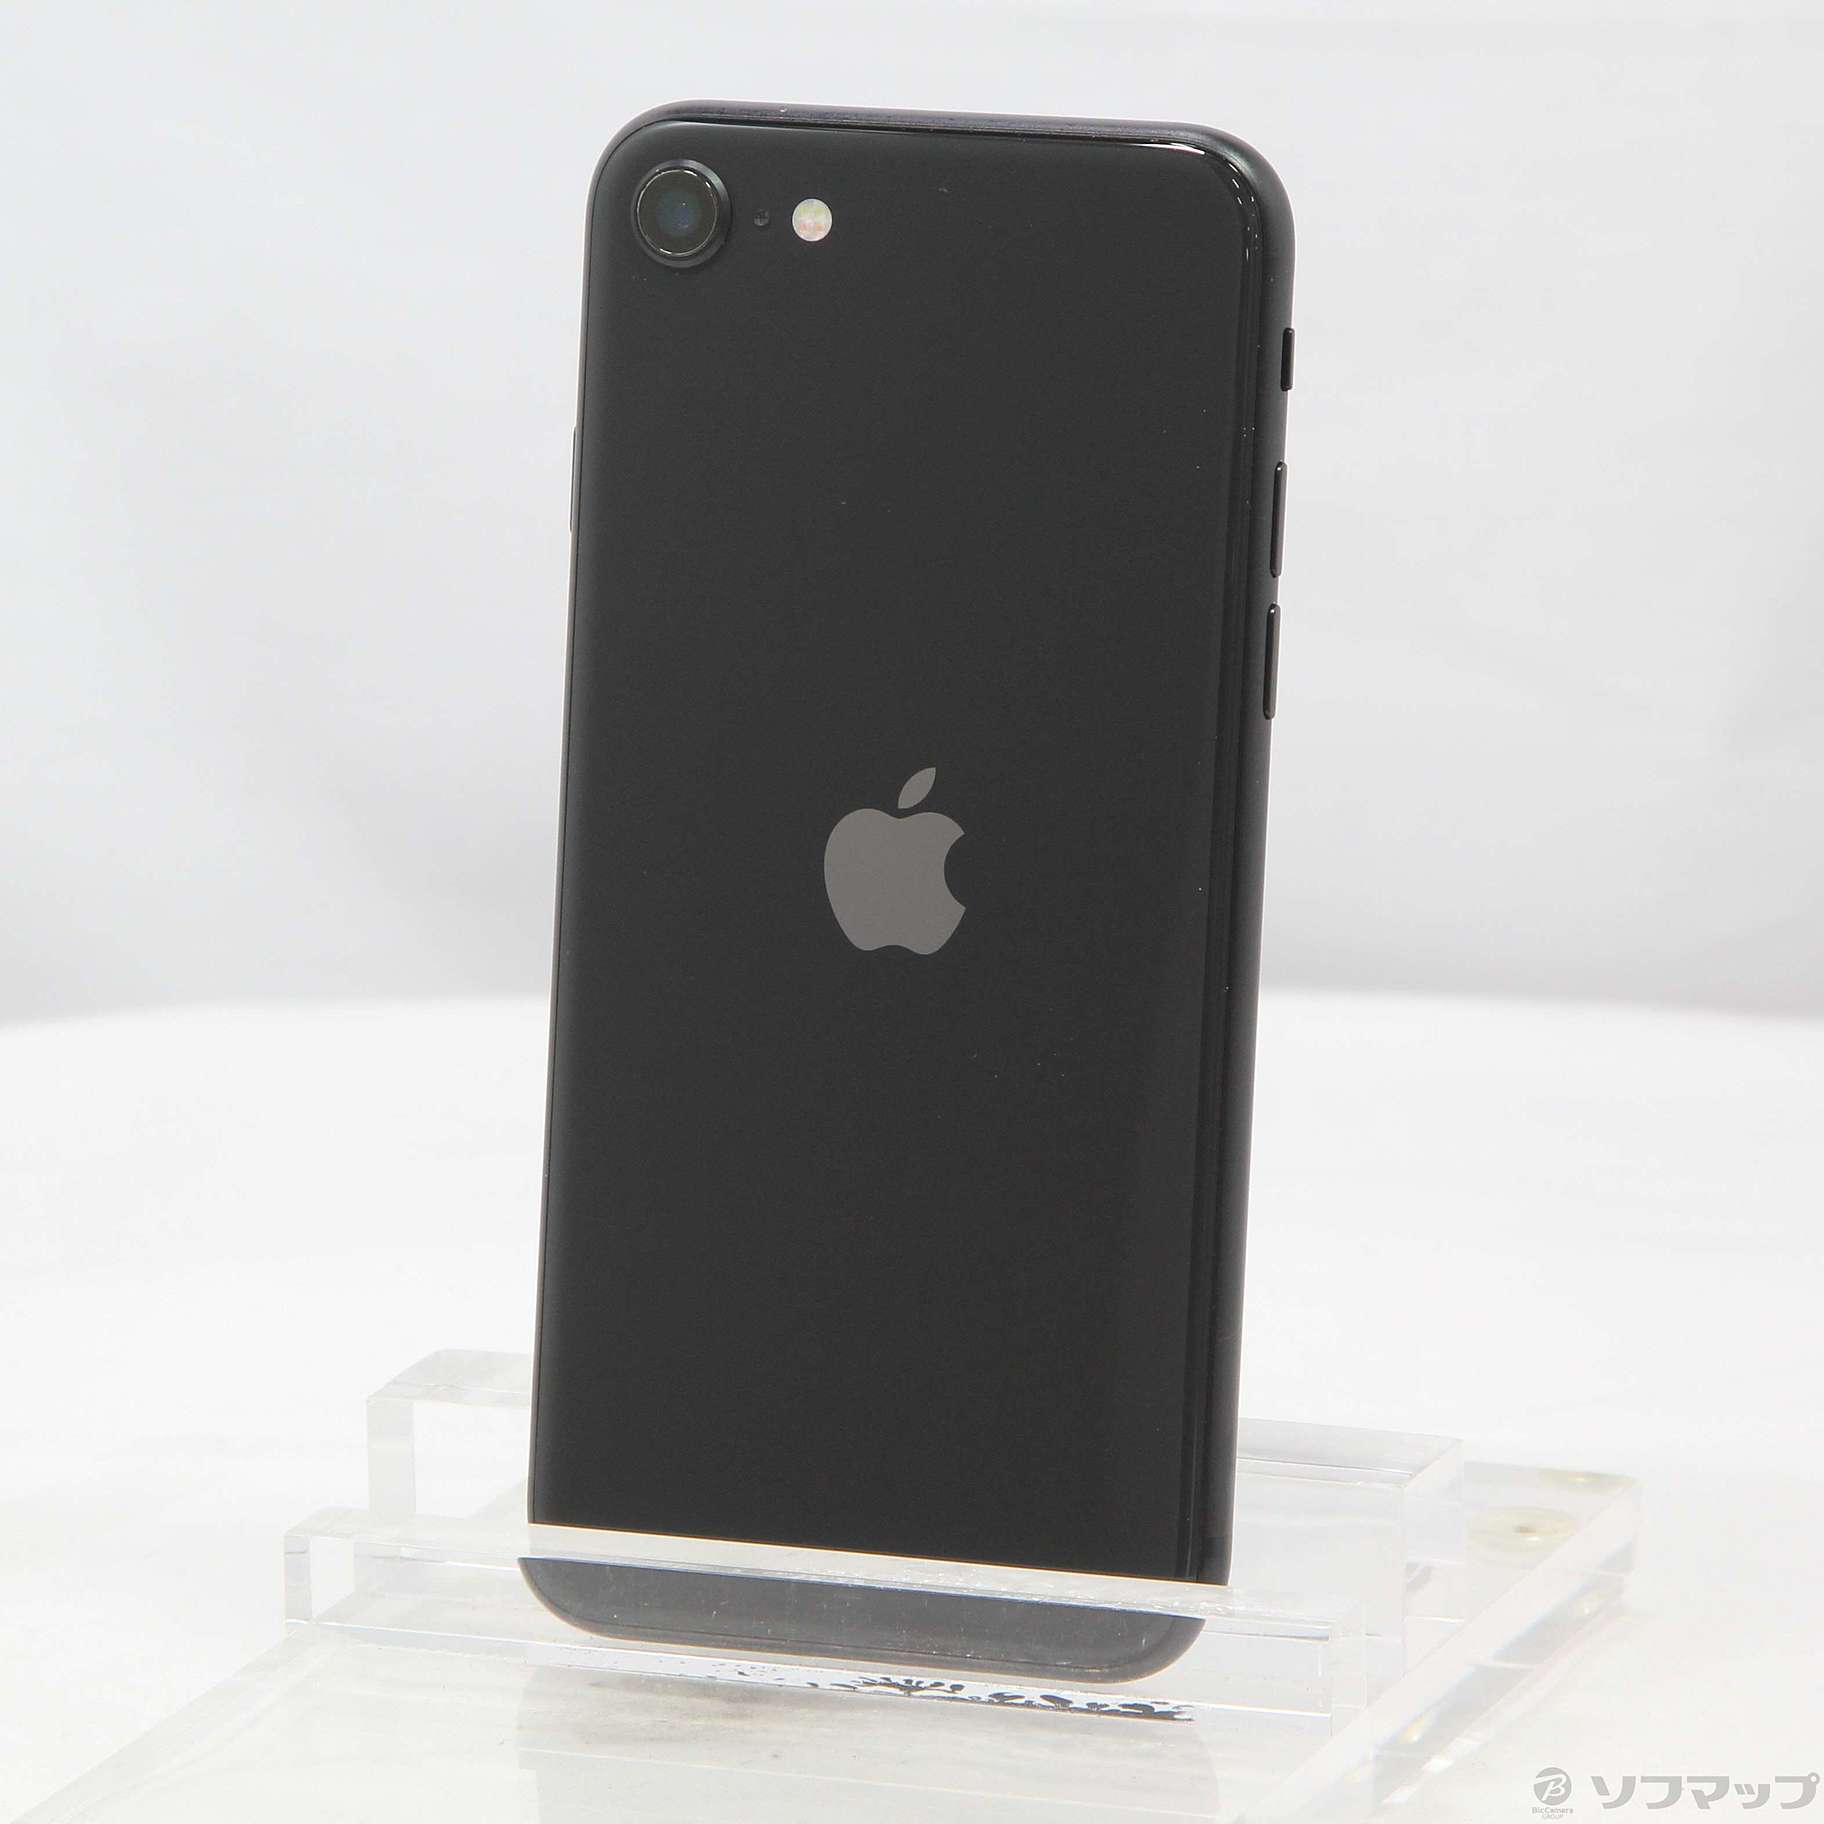 SIMロック解除済み iPhone SE 64GB ブラック(その2) - www ...